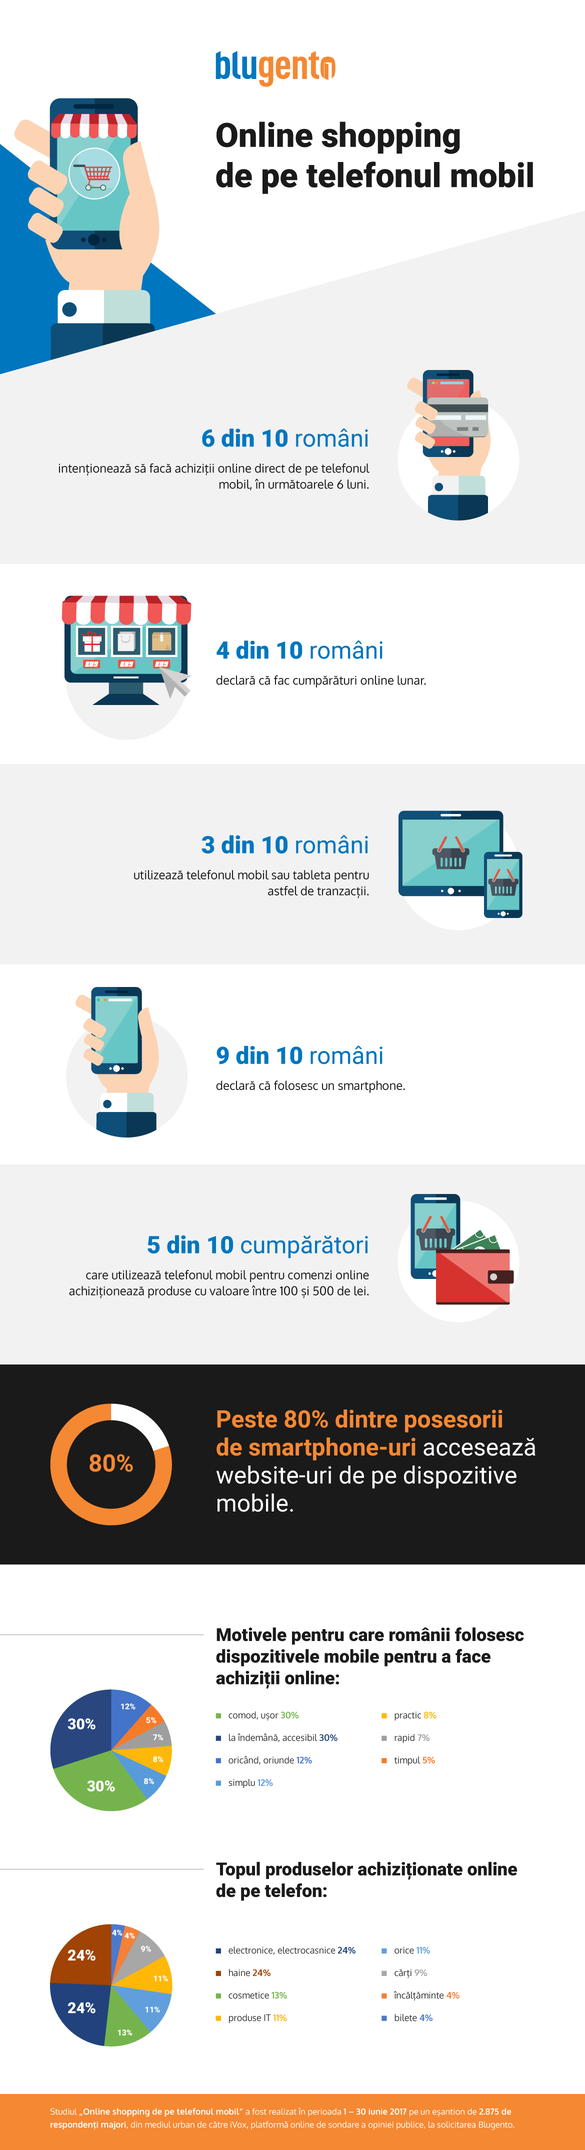 STUDIU Smartphone-ul își crește influența: 6 din 10 români majori care trăiesc în oraș pregătesc cel puțin o achiziție online de pe mobil până la finalul anului